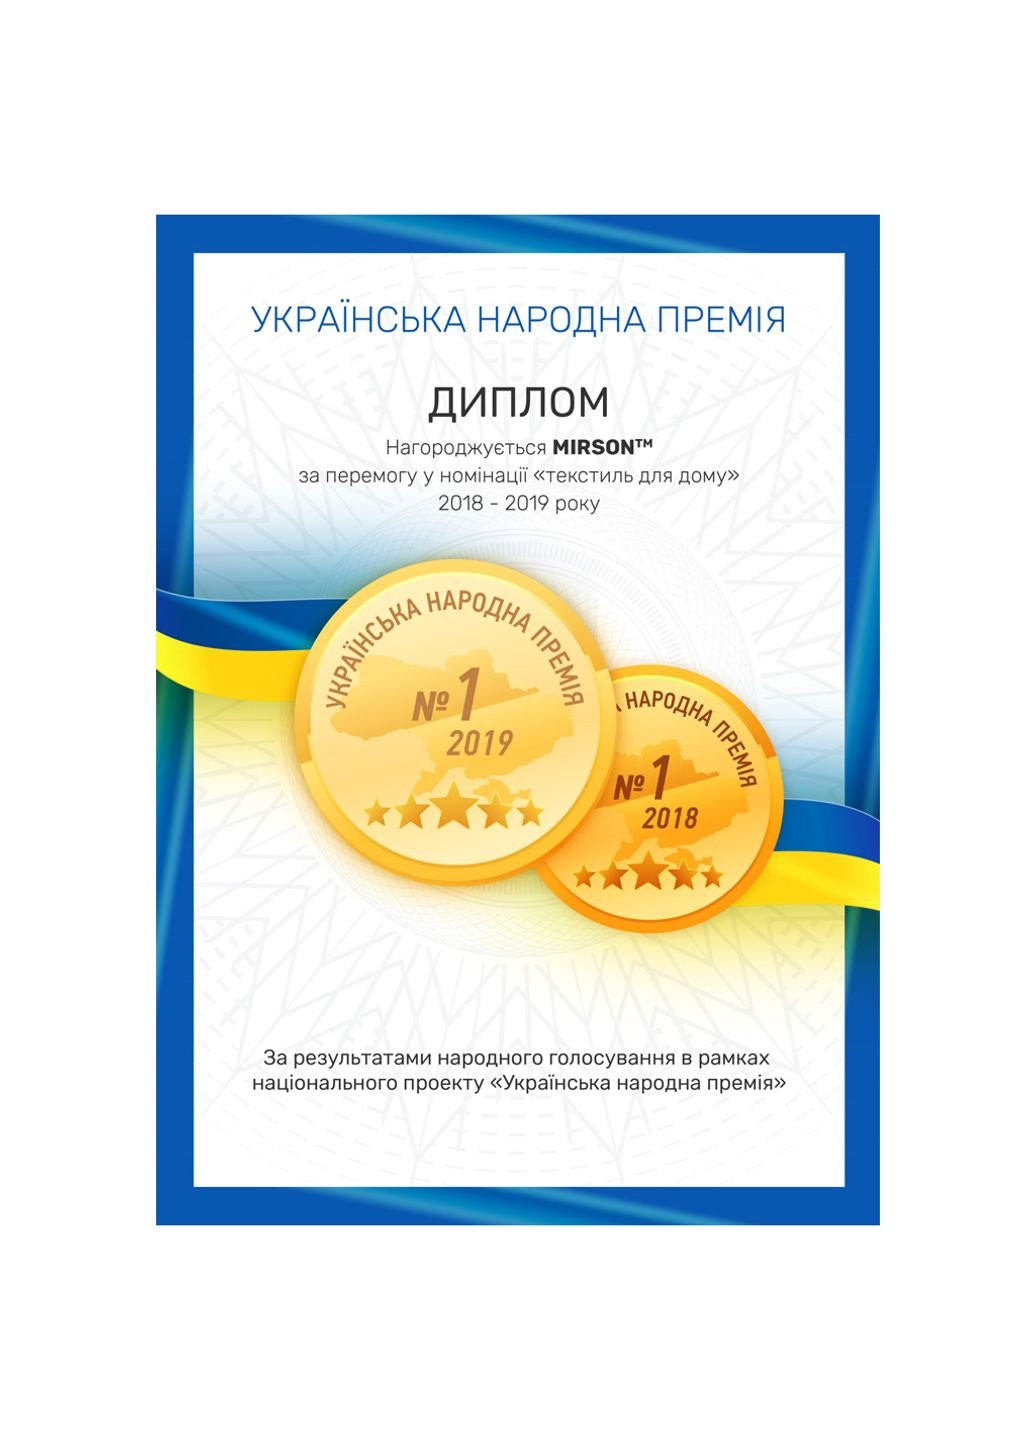 Mirson полотенце банное №5015 softness blueberry 100x150 см (2200003181333) синий производство - Украина